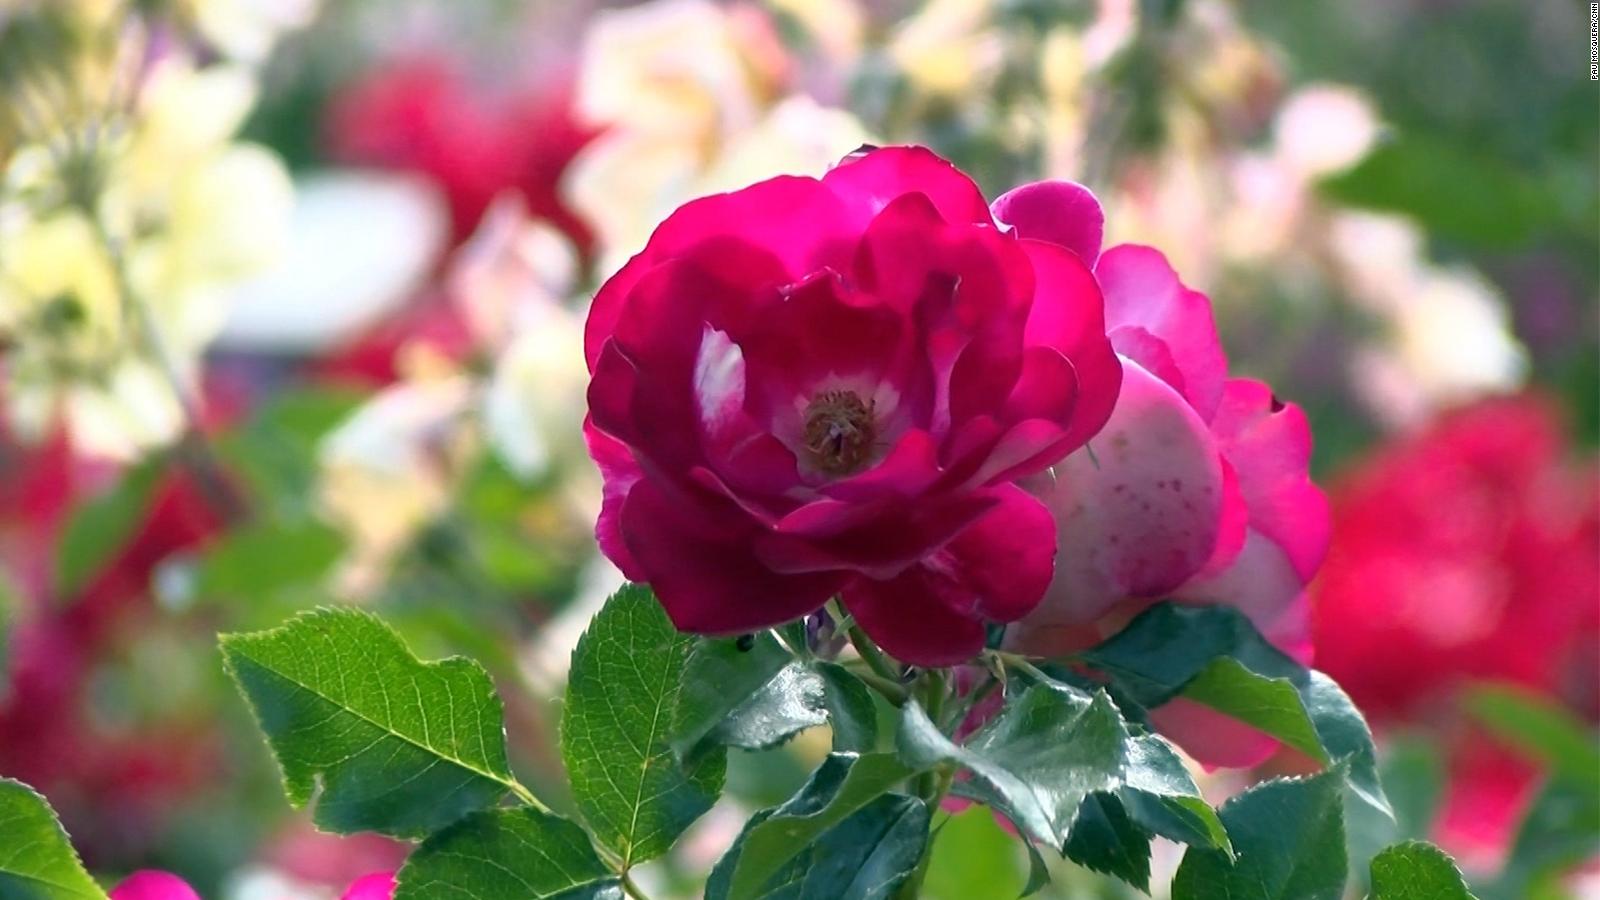 La rosa más bonita del mundo proviene de Alemania | Video | CNN